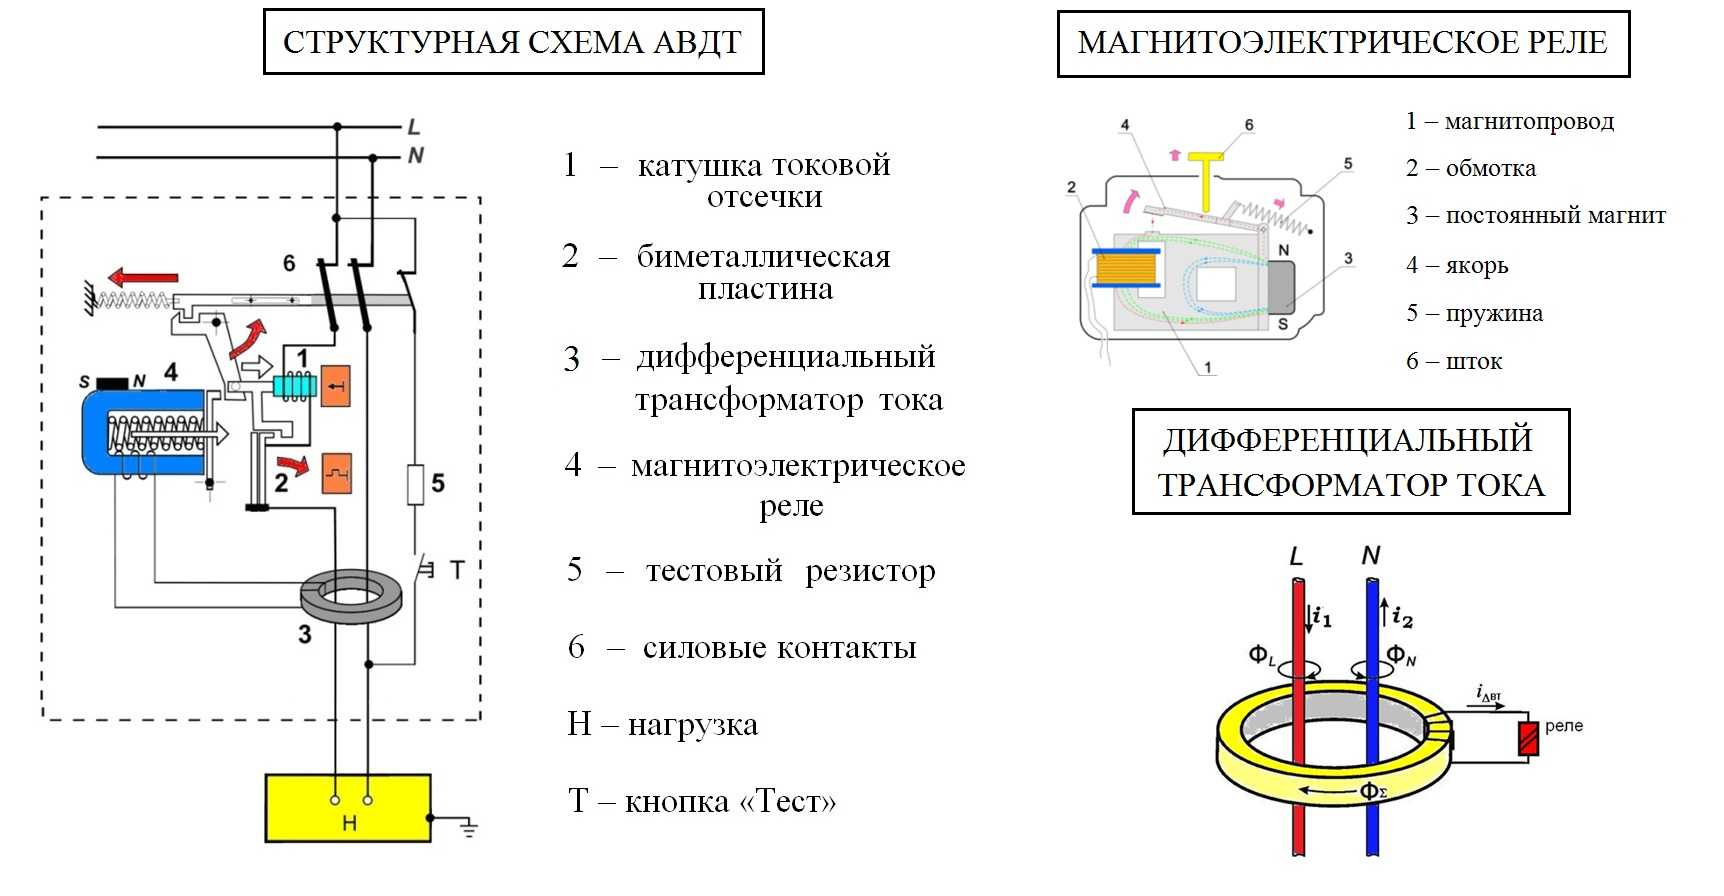 Как определить электромеханическое узо от электронного. электромеханическое и электронное узо: выбор, особенности и отличия. используем постоянный магнит